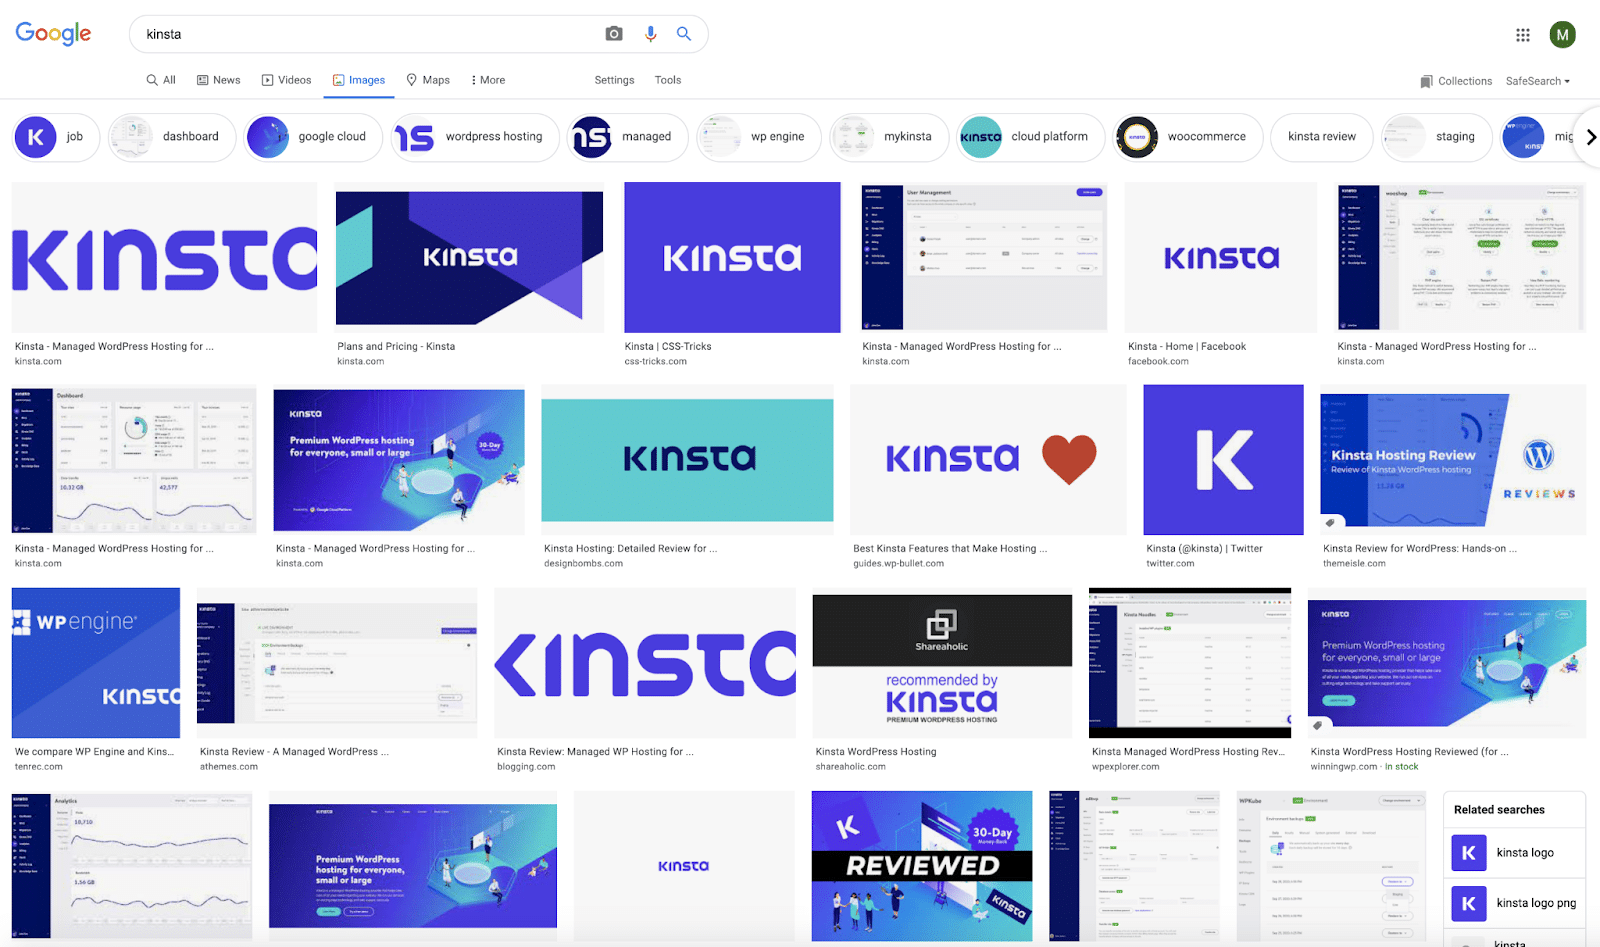 谷歌上 Kinsta 标志的图片搜索结果。